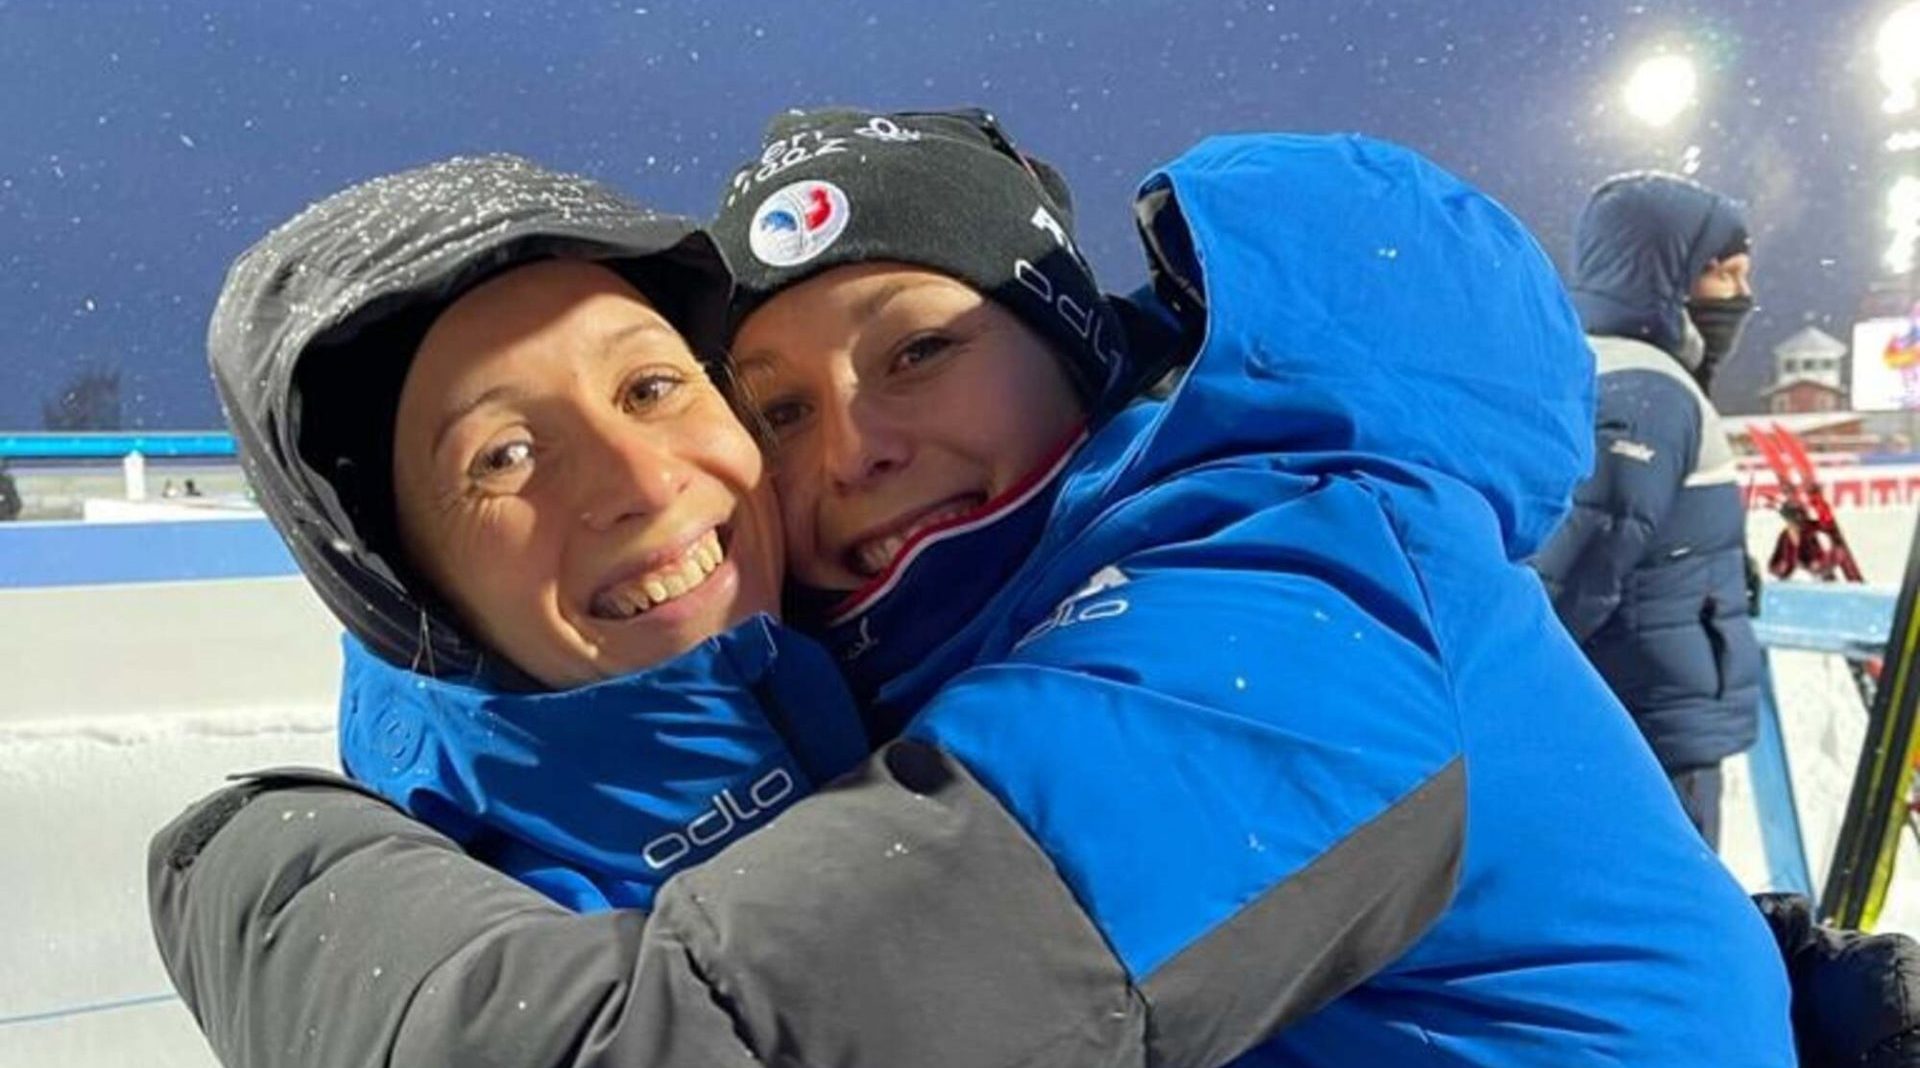 Les soeurs Chevalier évoluent ensemble sur le circuit du biathlon international